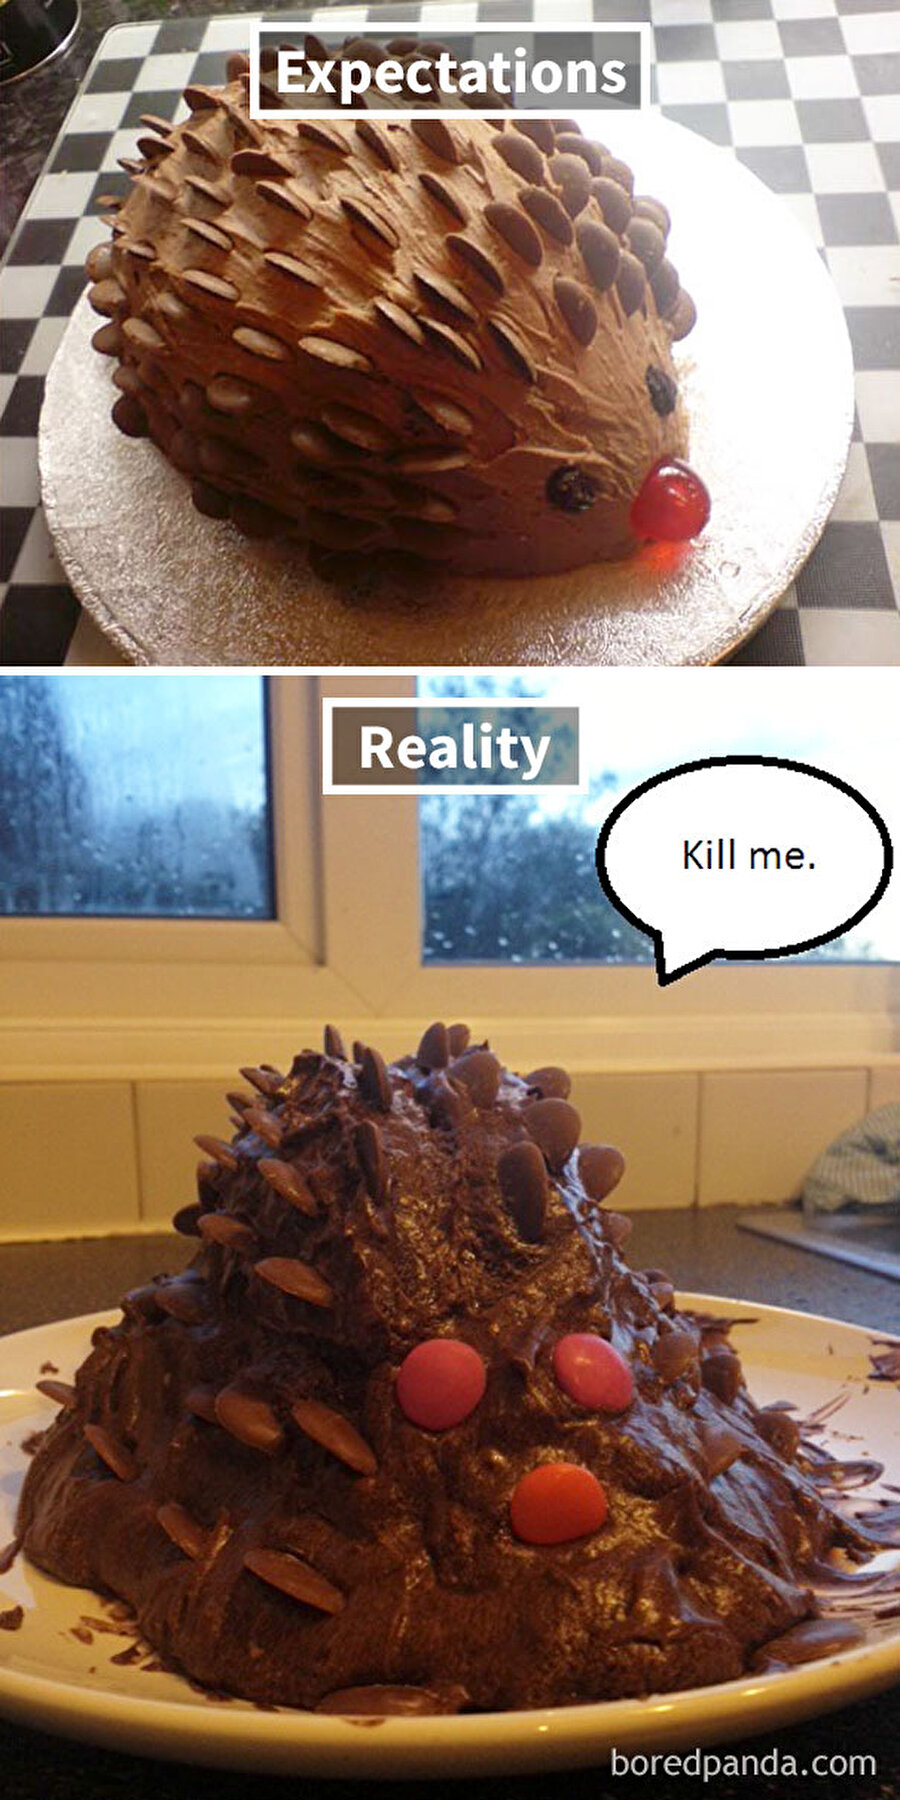 Çikolatalı kirpi pastası
Kirpinin yerinde olsam ben de ölmek isterdim.